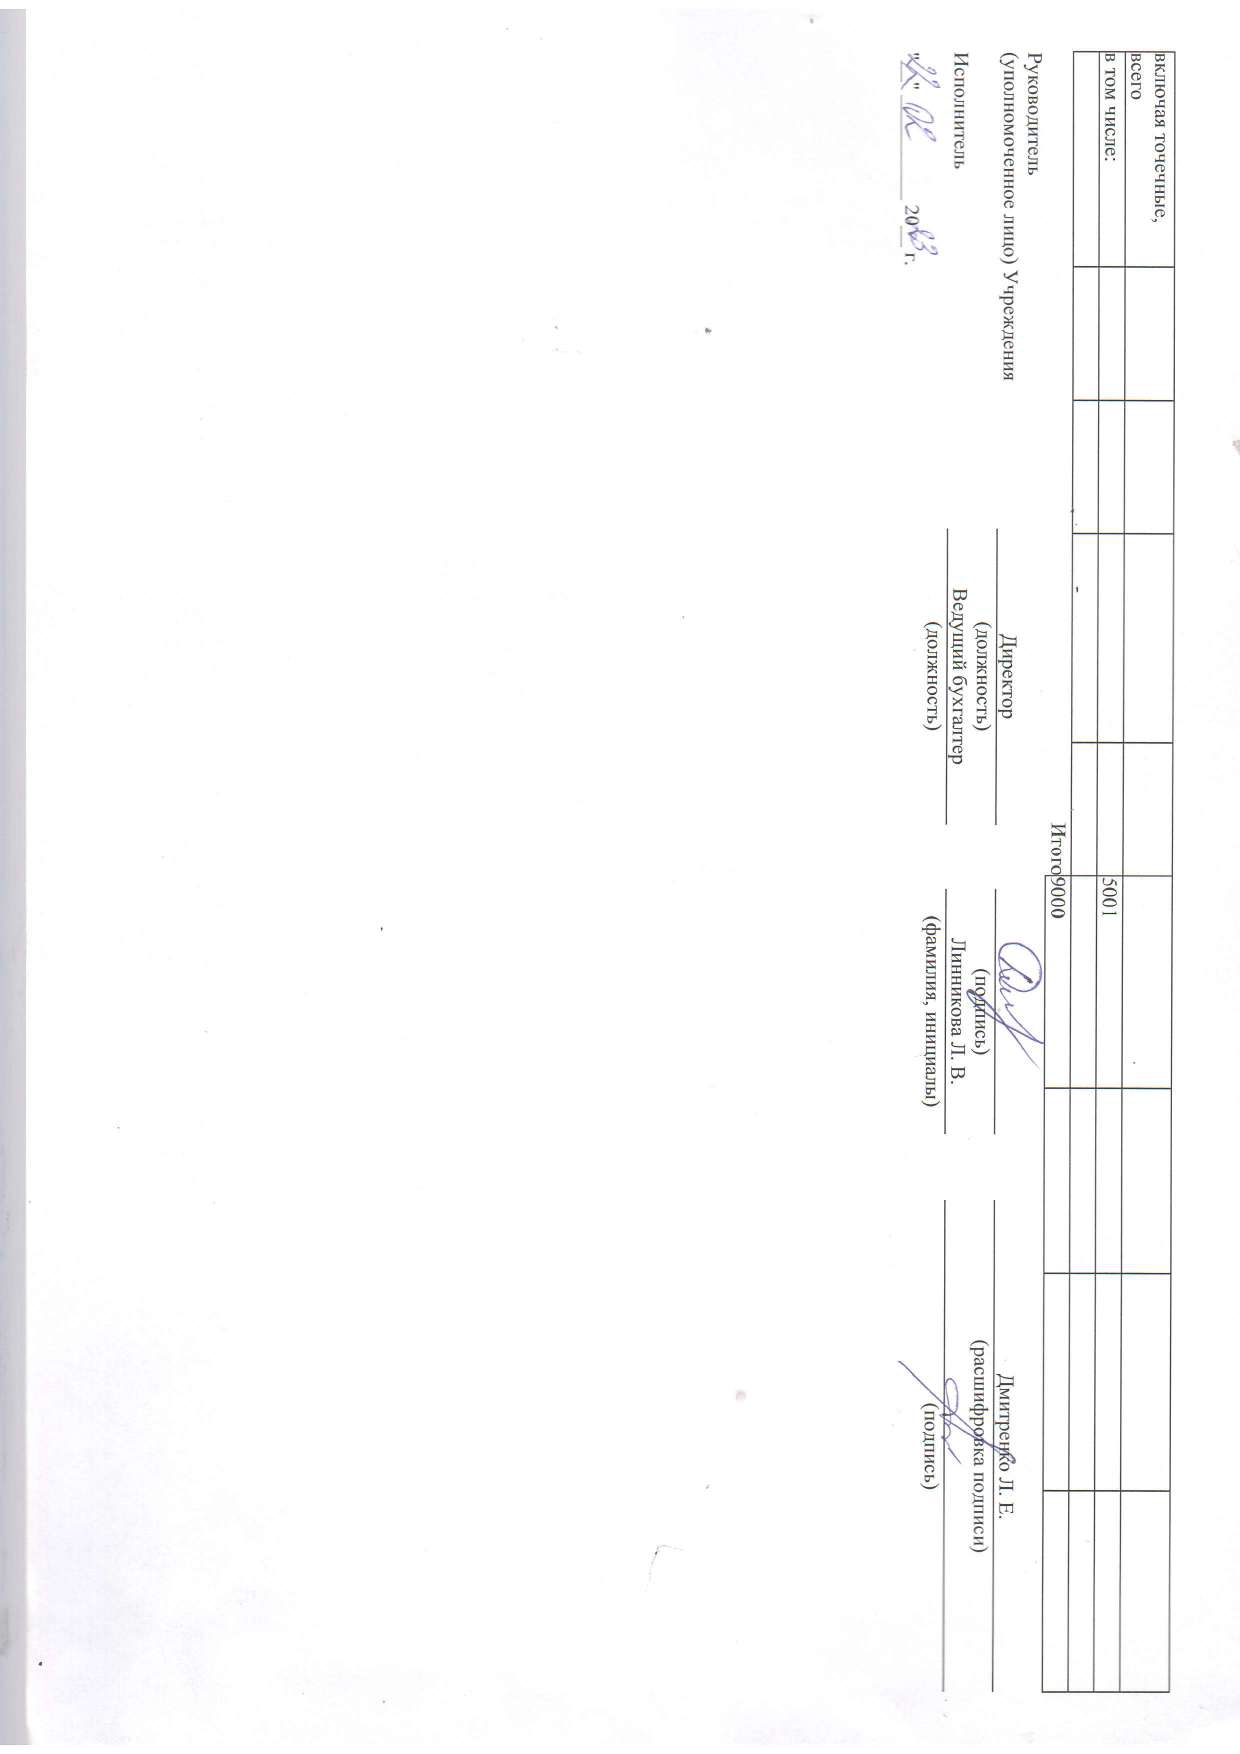 Отчет о результатах деятельности муниципального учреждения на 01.01.2023 г_page-0052.jpg